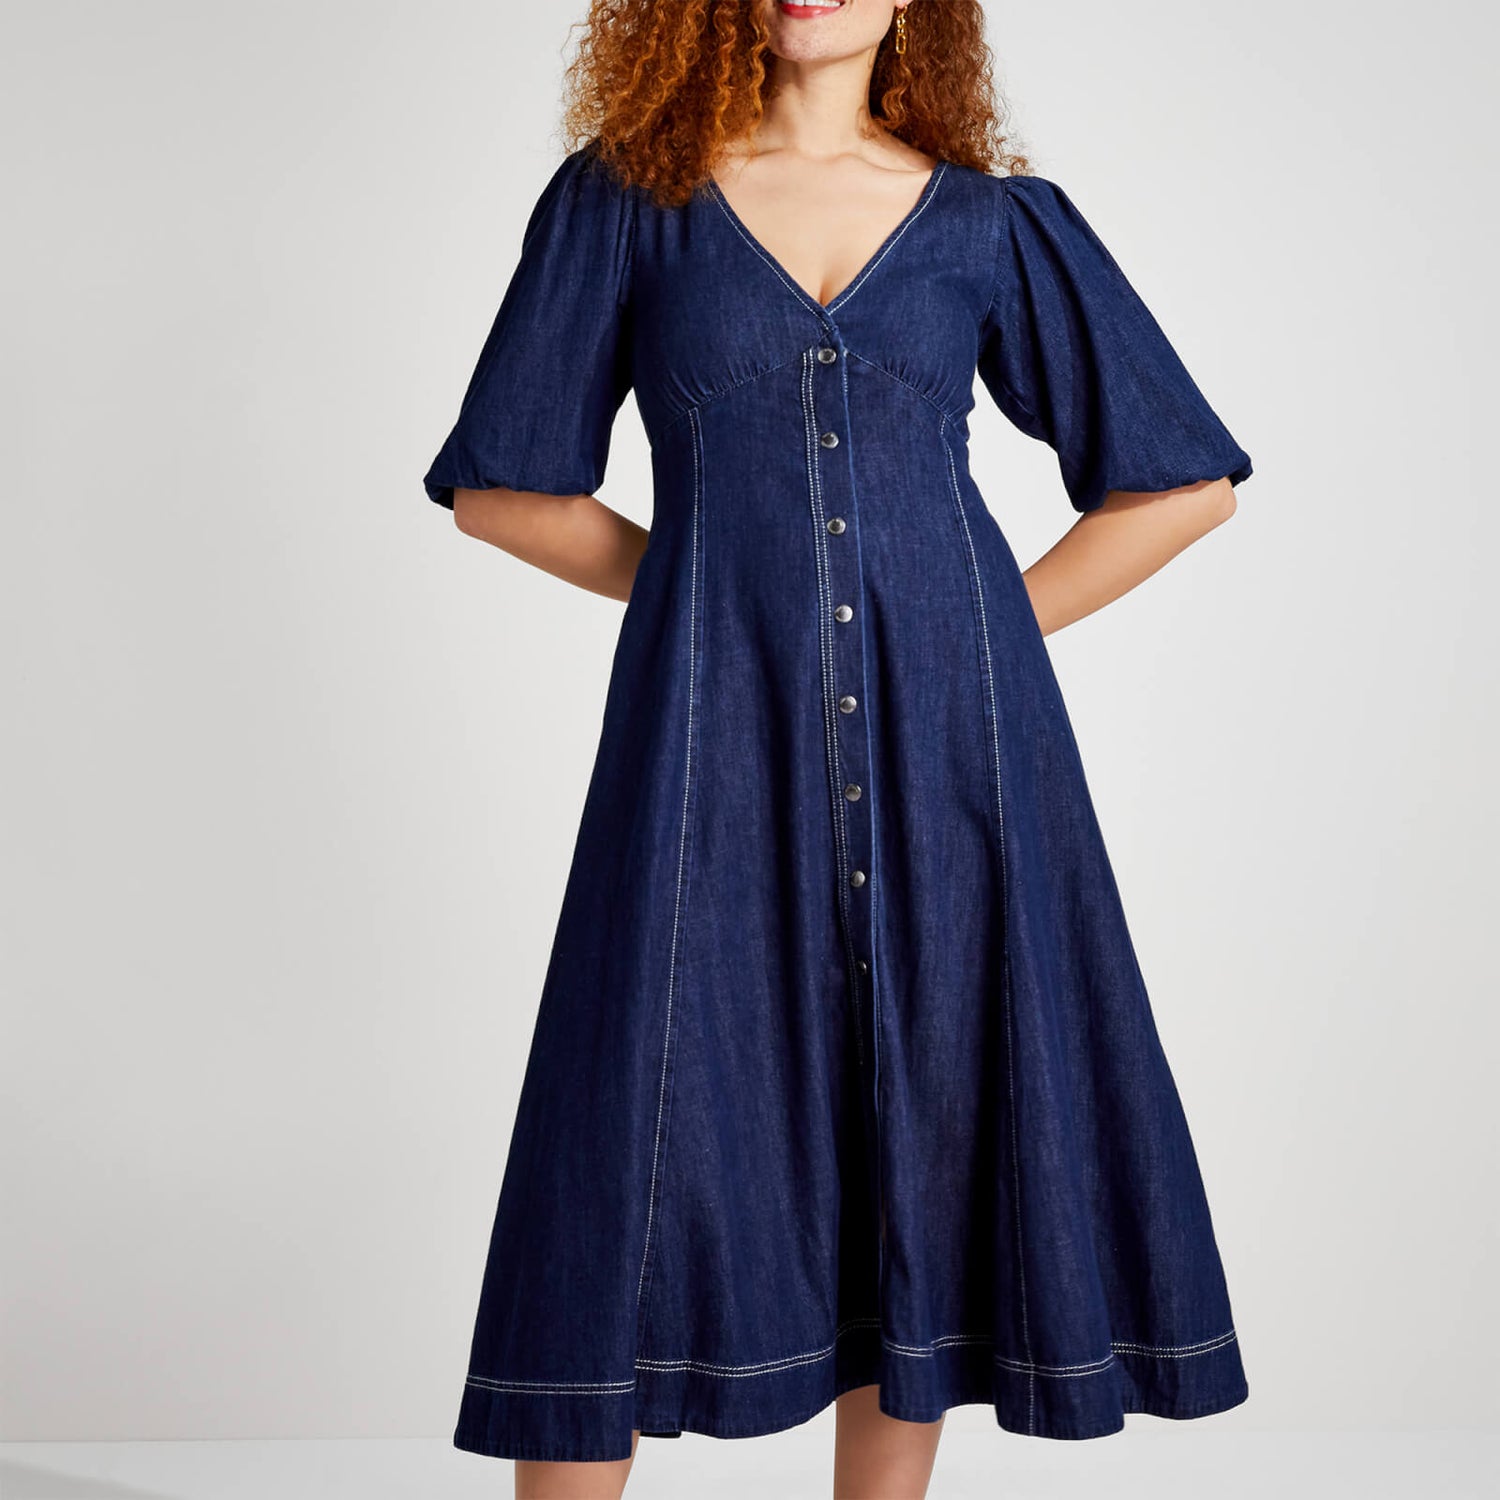 Kate Spade New York Women's Denim Button-Front Dress - Denim | TheHut.com